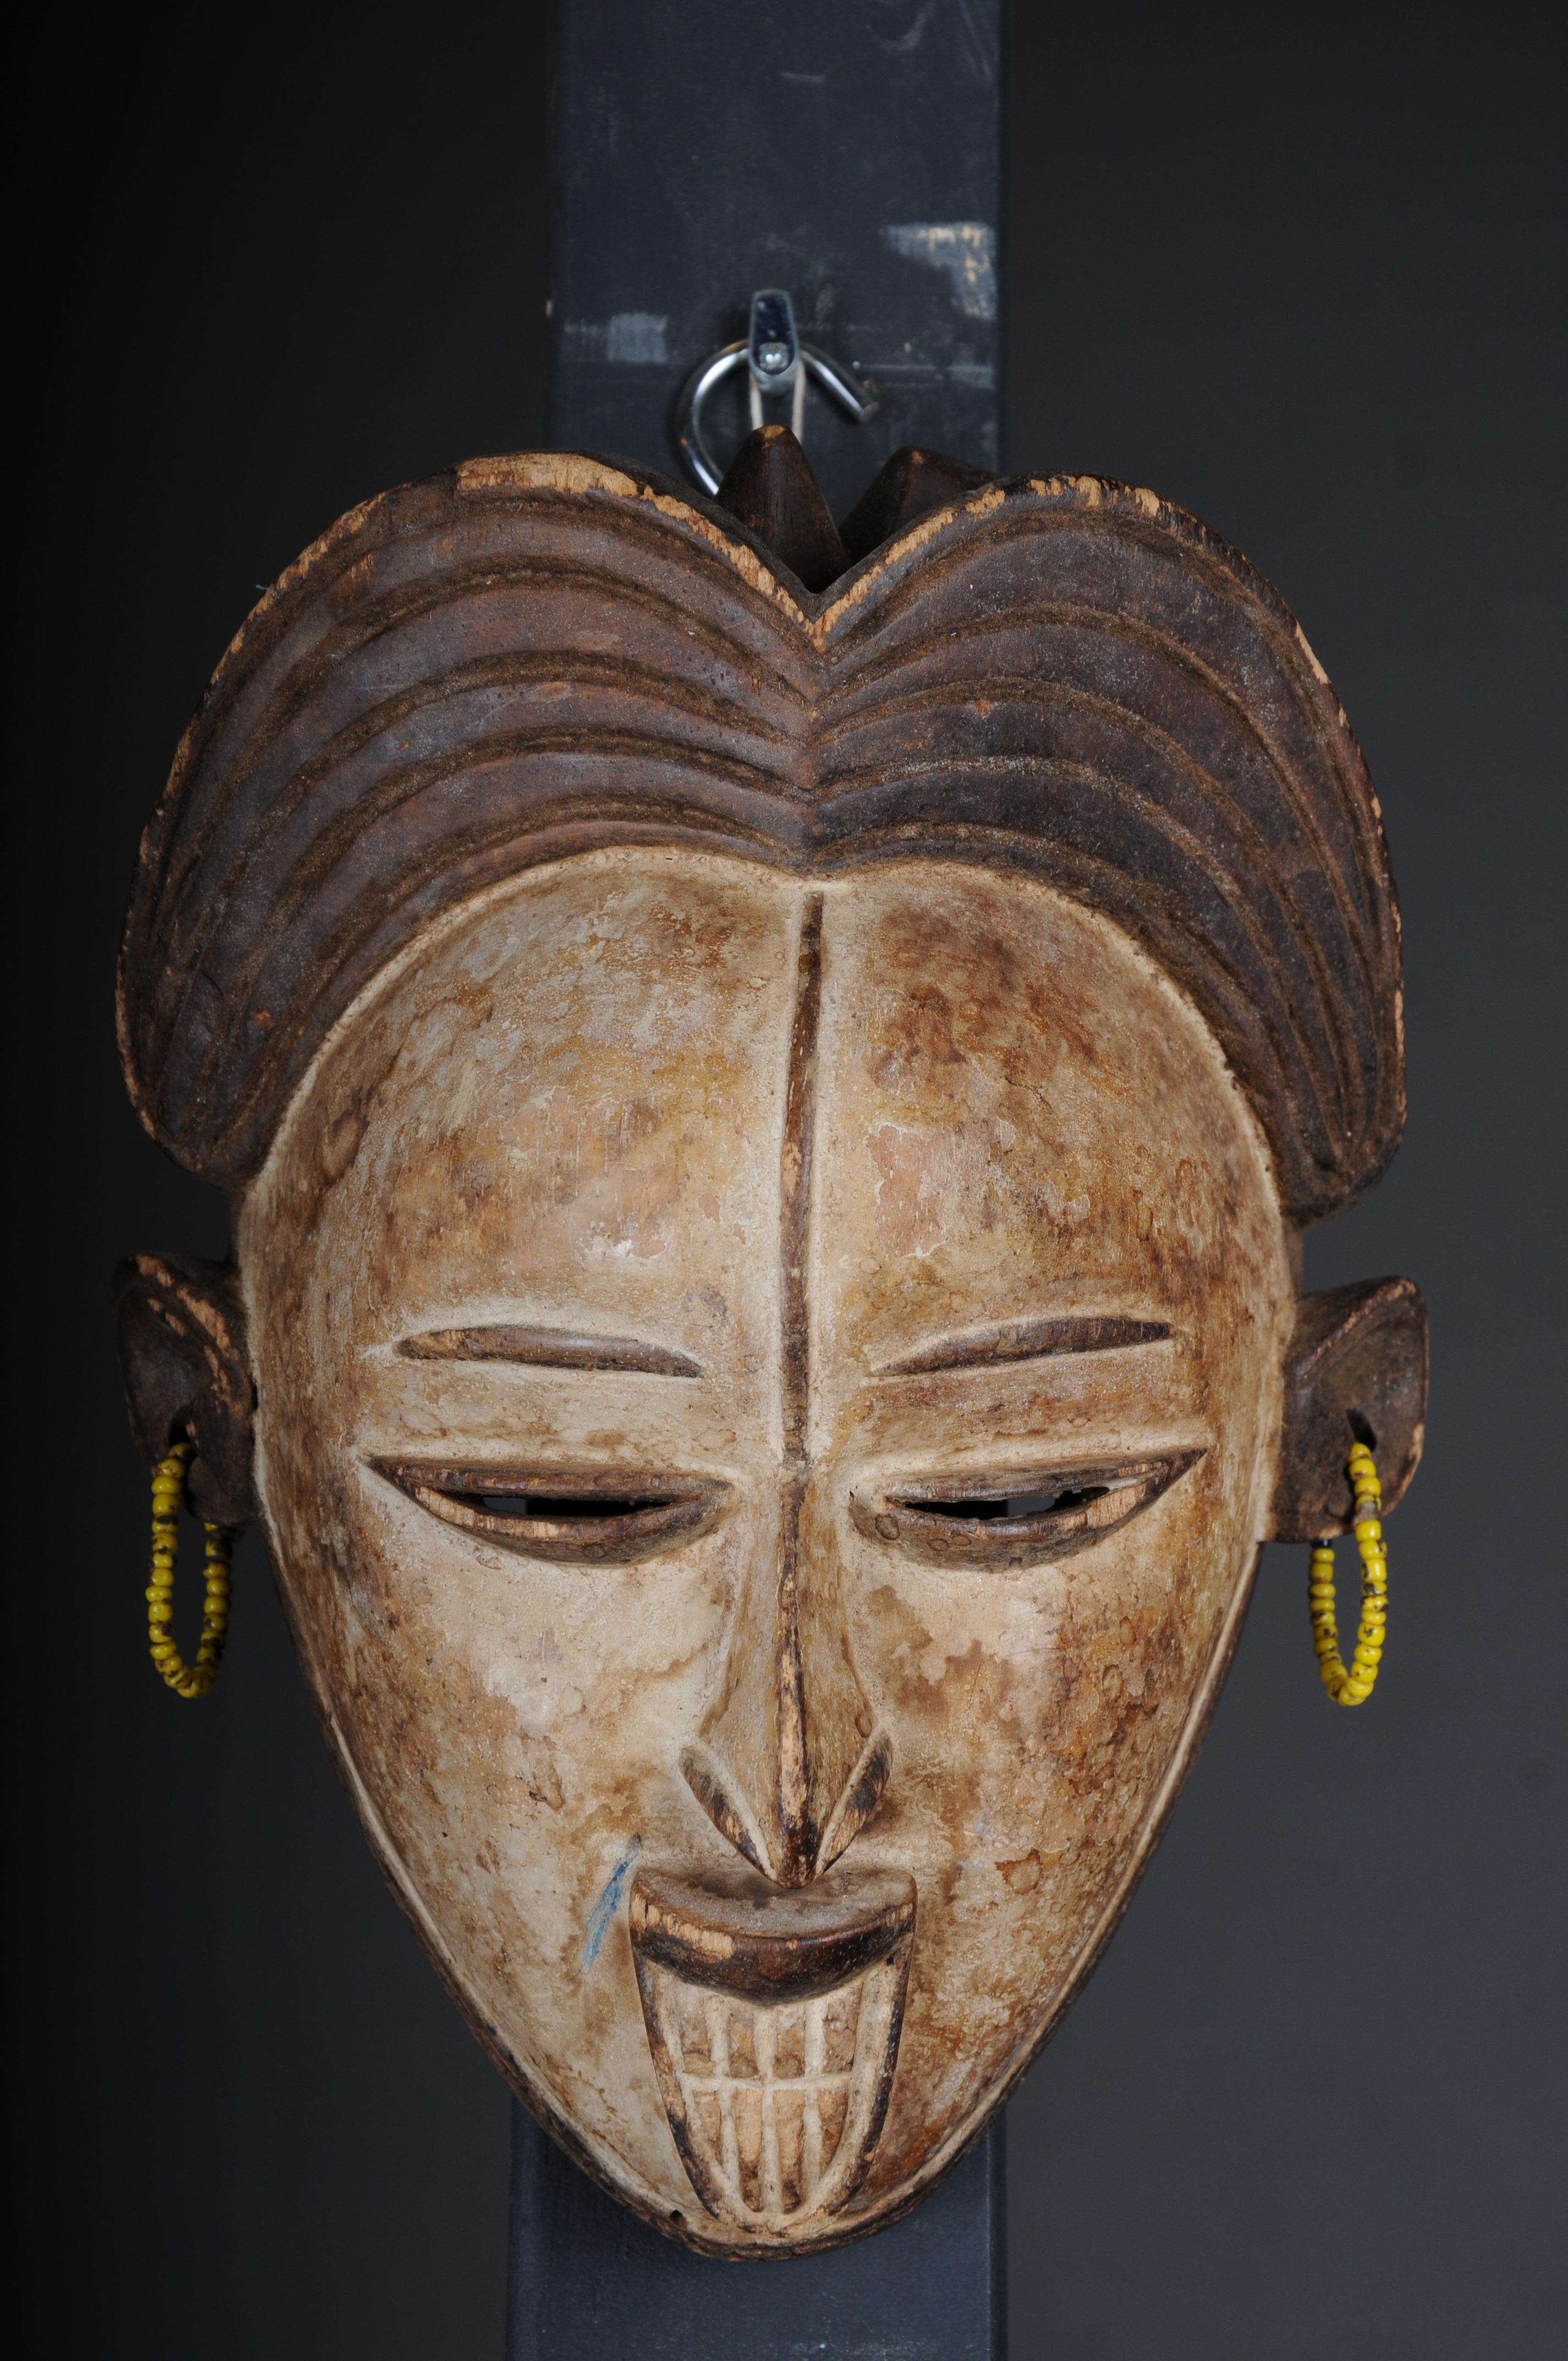 Antike geschnitzte Holzmaske des 20. Jahrhunderts, afrikanische Volkskunst. Aufhängbar.Dekorativ

Massivholz, handgeschnitzt, Afrika wahrscheinlich 20.

Die Gesichtsmaske hat eine Vorrichtung zum Aufhängen.

Sehr dekoratives, zeitloses Kunstwerk.

 